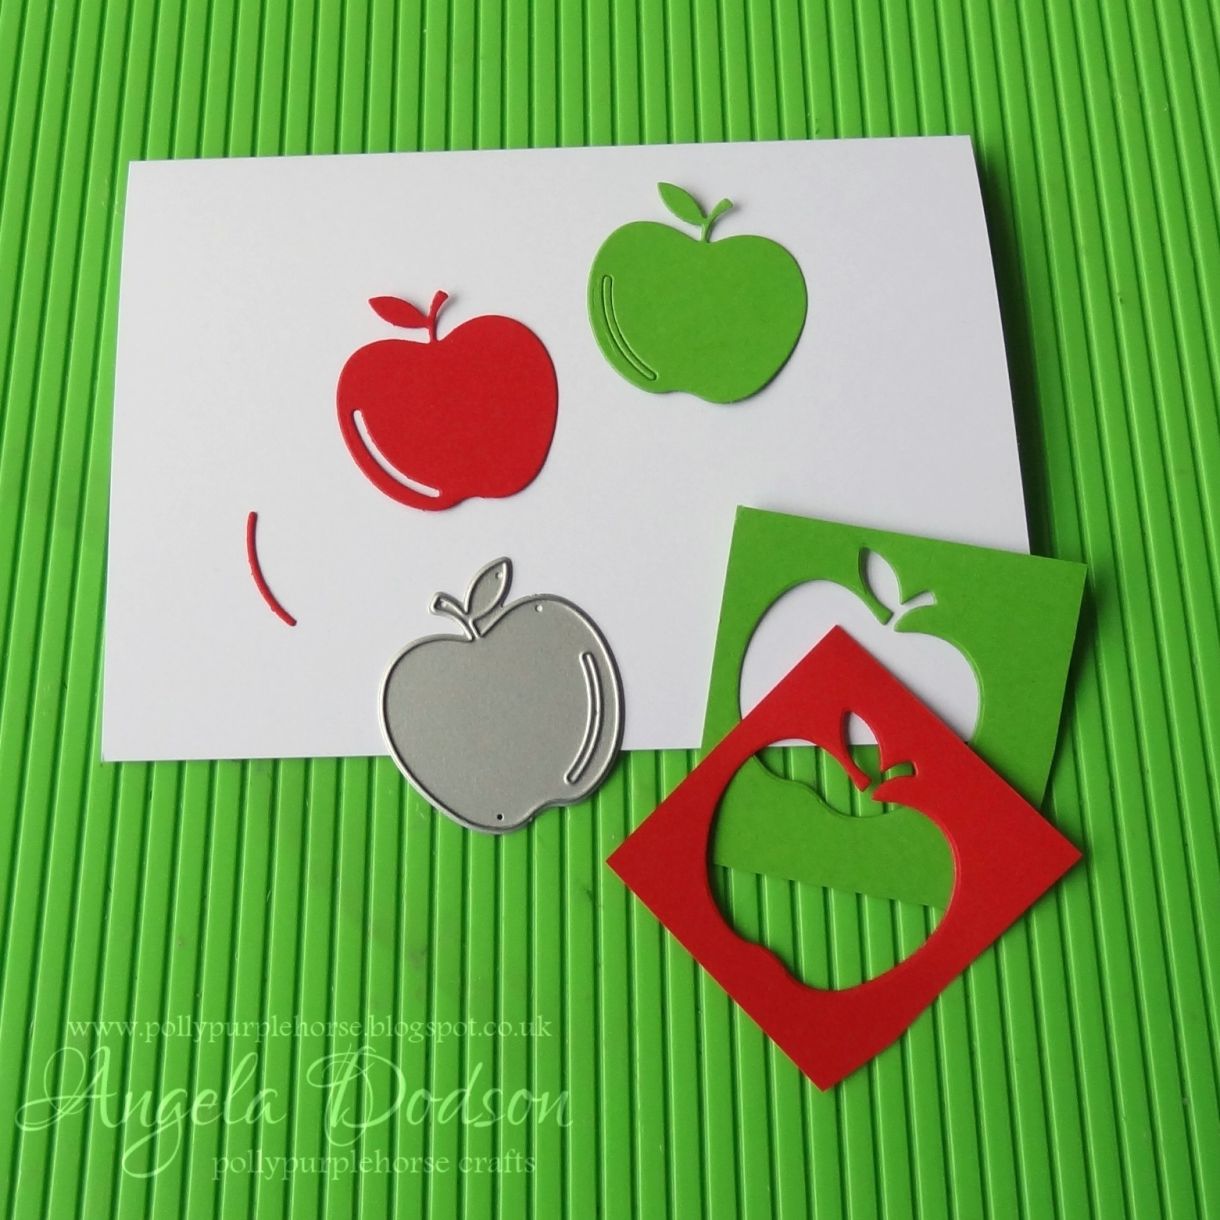 3 - Die Cut Apple Shapes